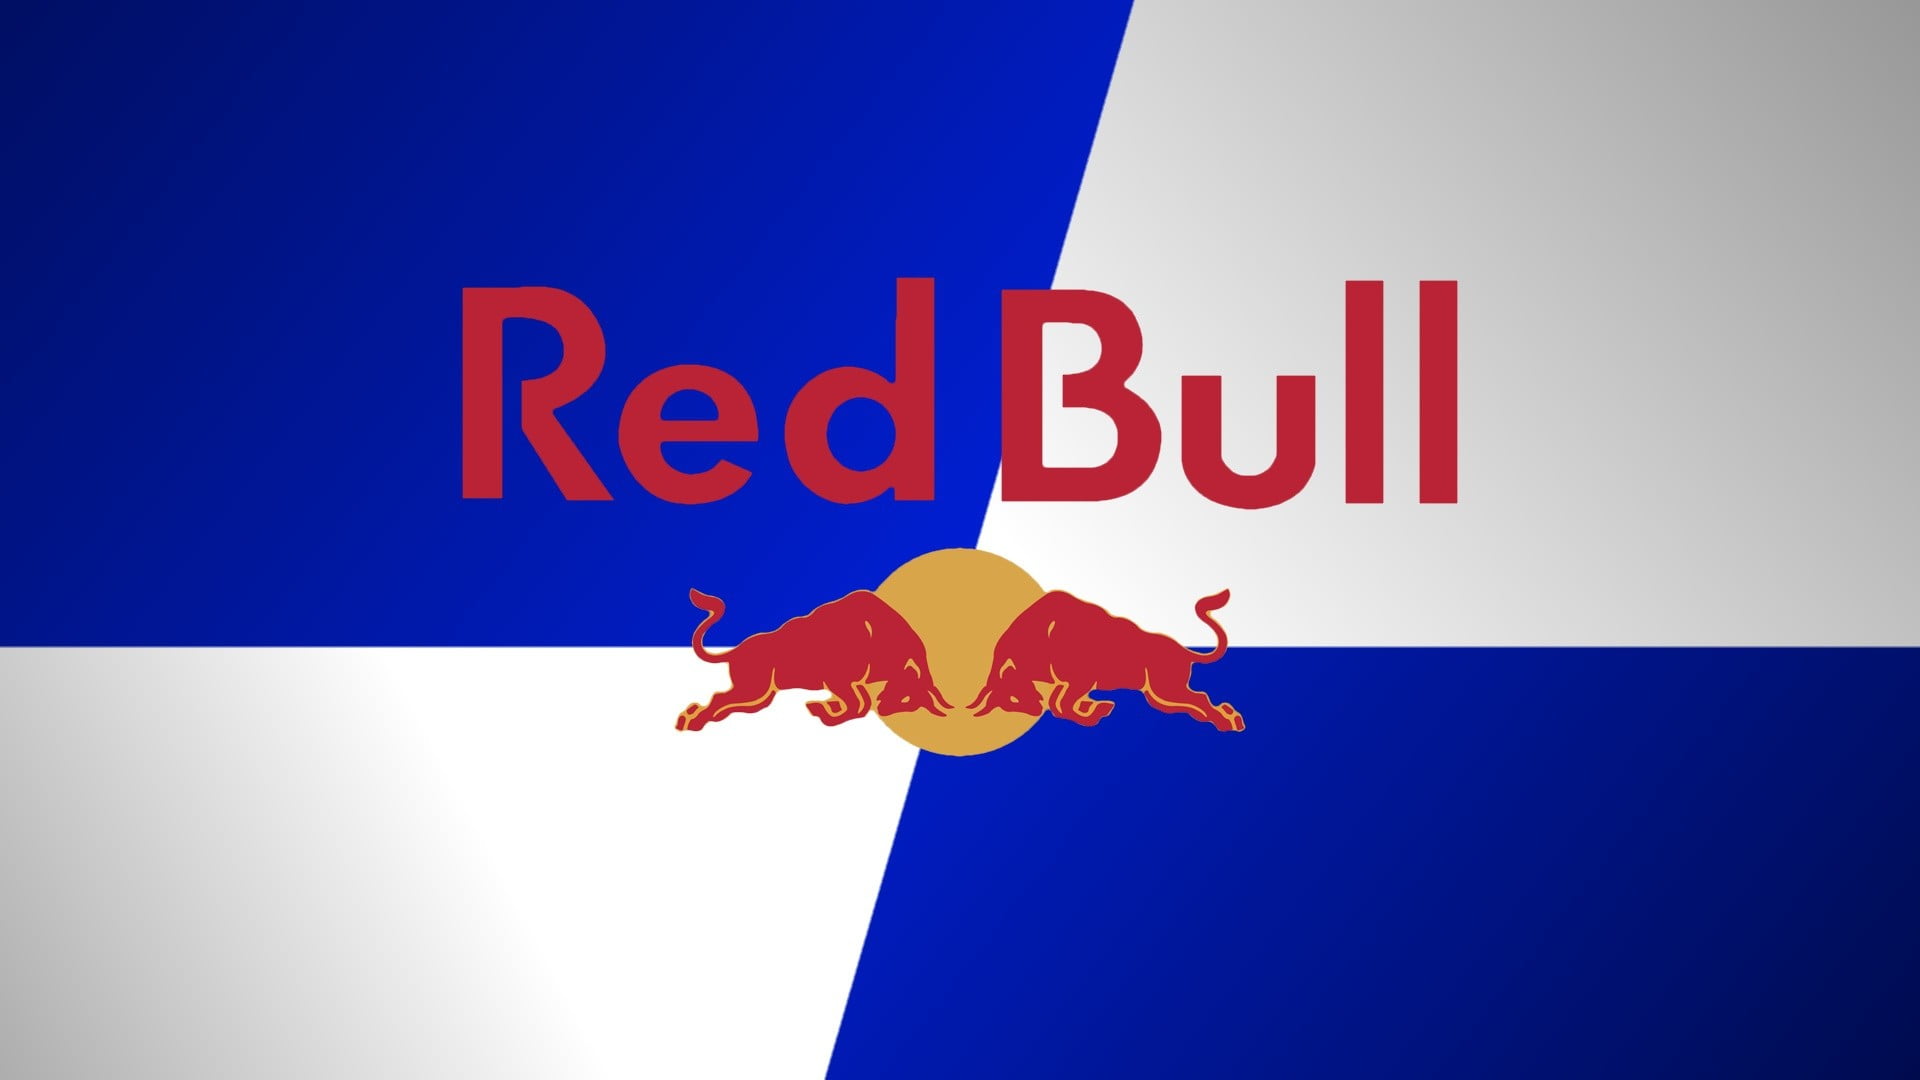 Red Bull logo, Red Bull, logo